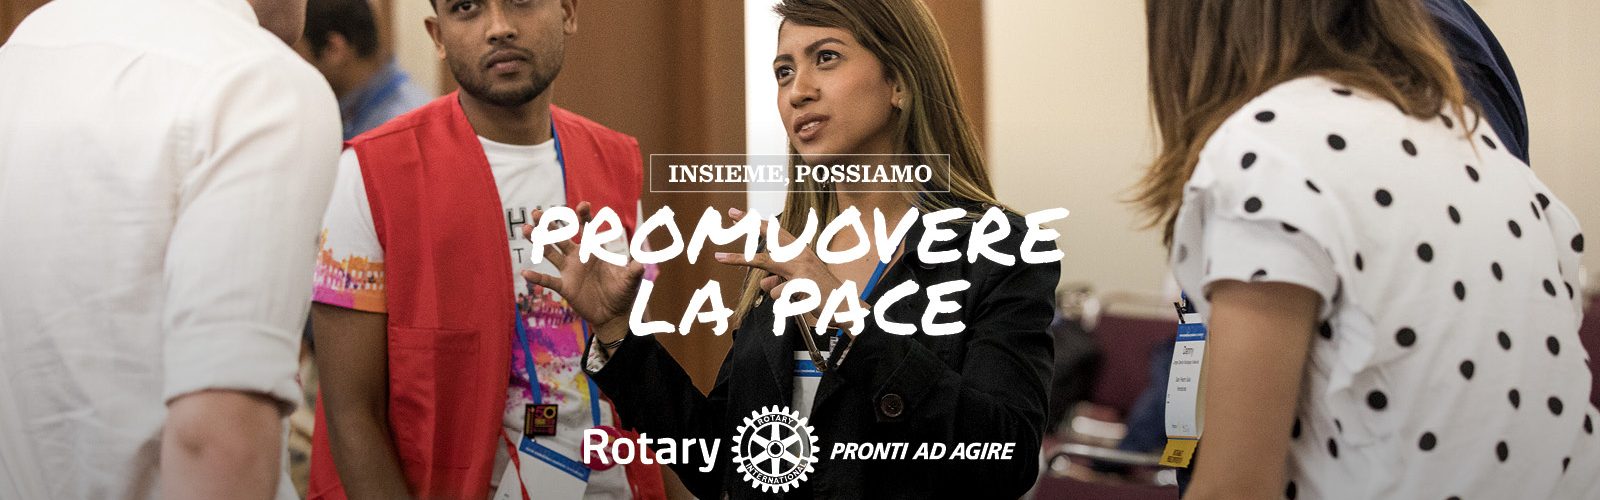 Rotary Club Torino Europea